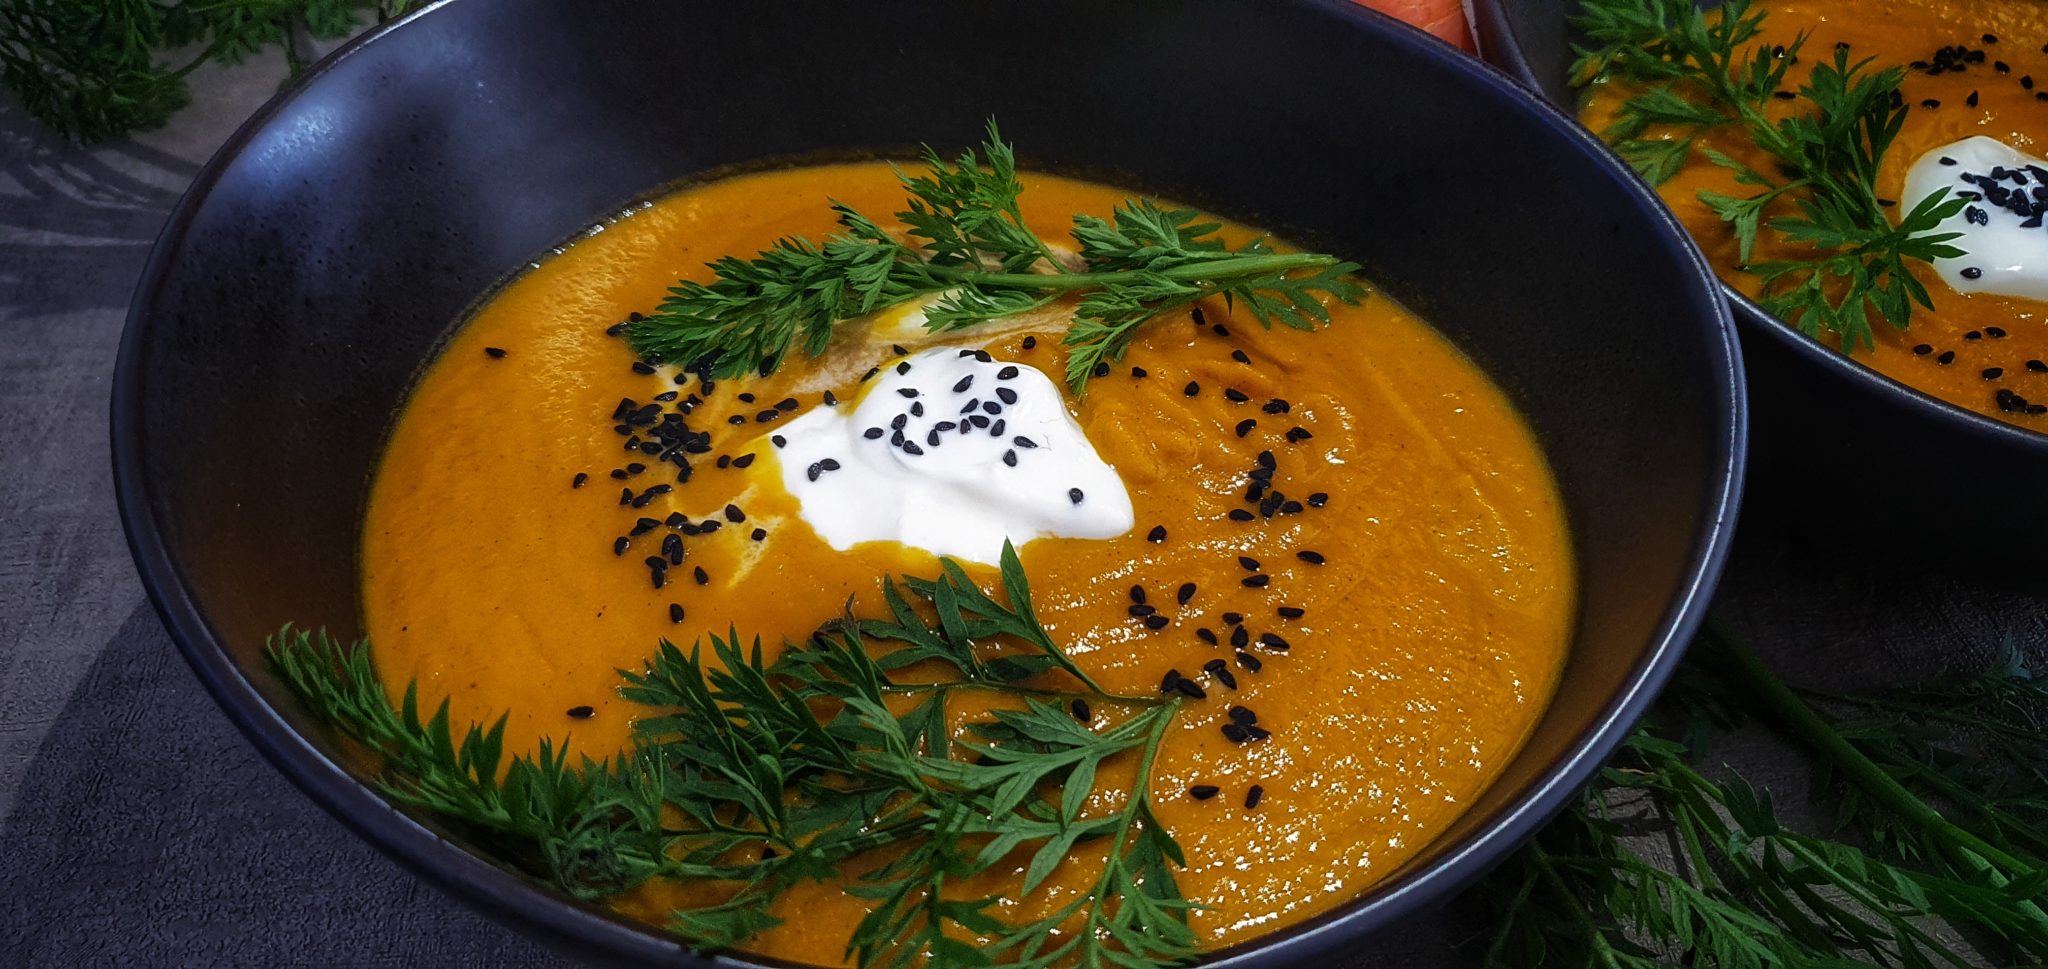 Orientalische Möhren-Kokos Suppe mit Pfiff - lifestylezauber.de